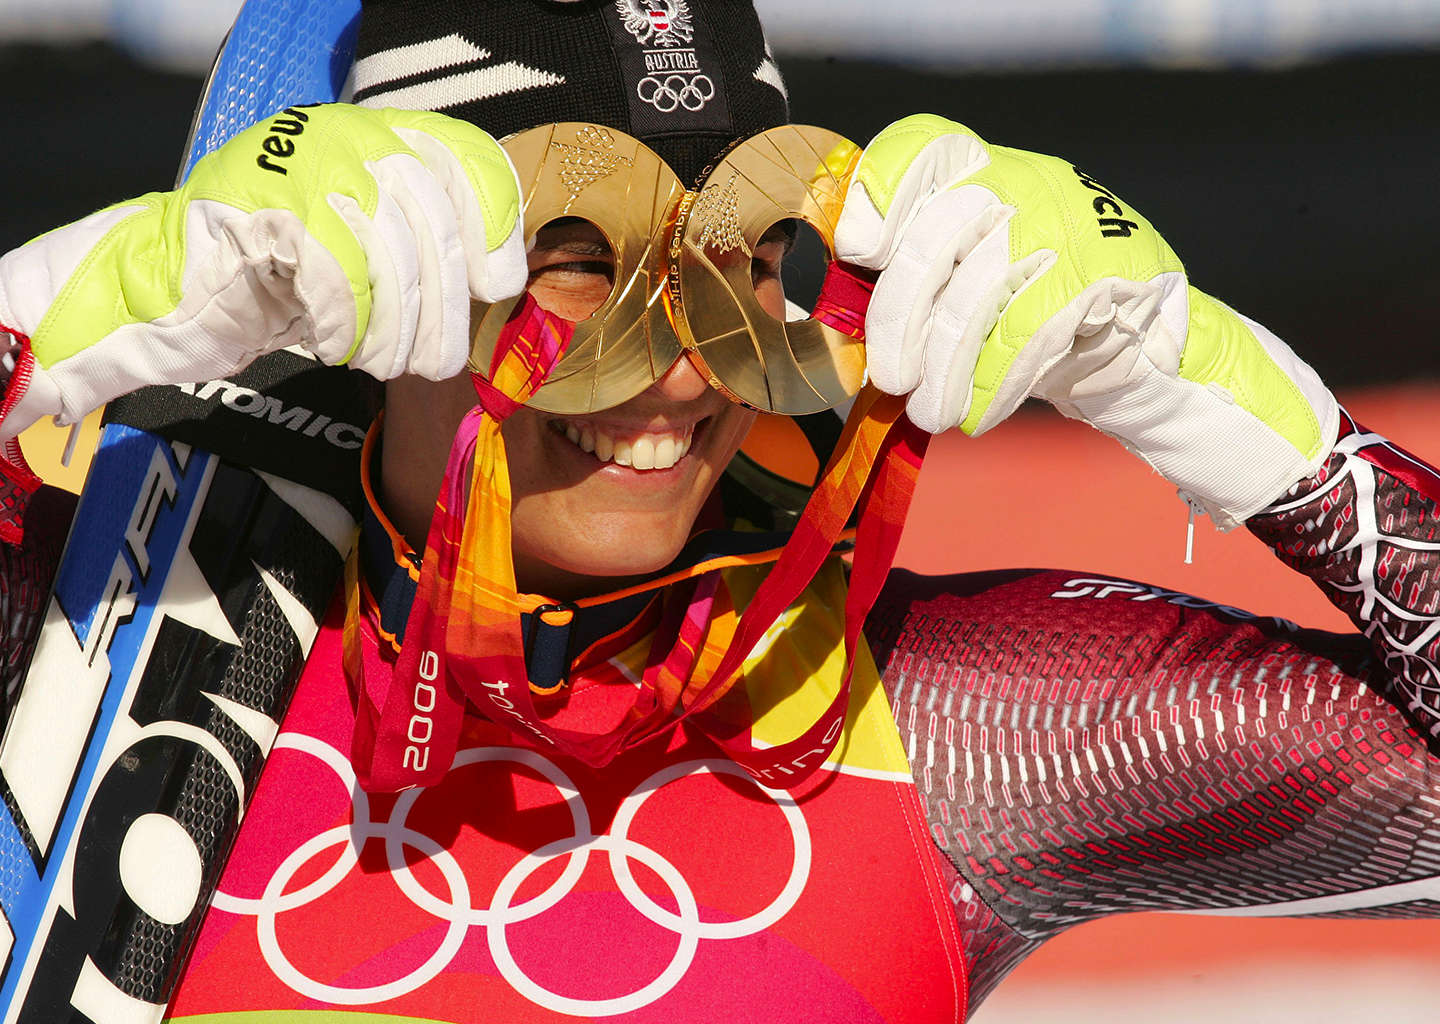 Michaela Dorfmeister con due medaglie olimpiche in mano 